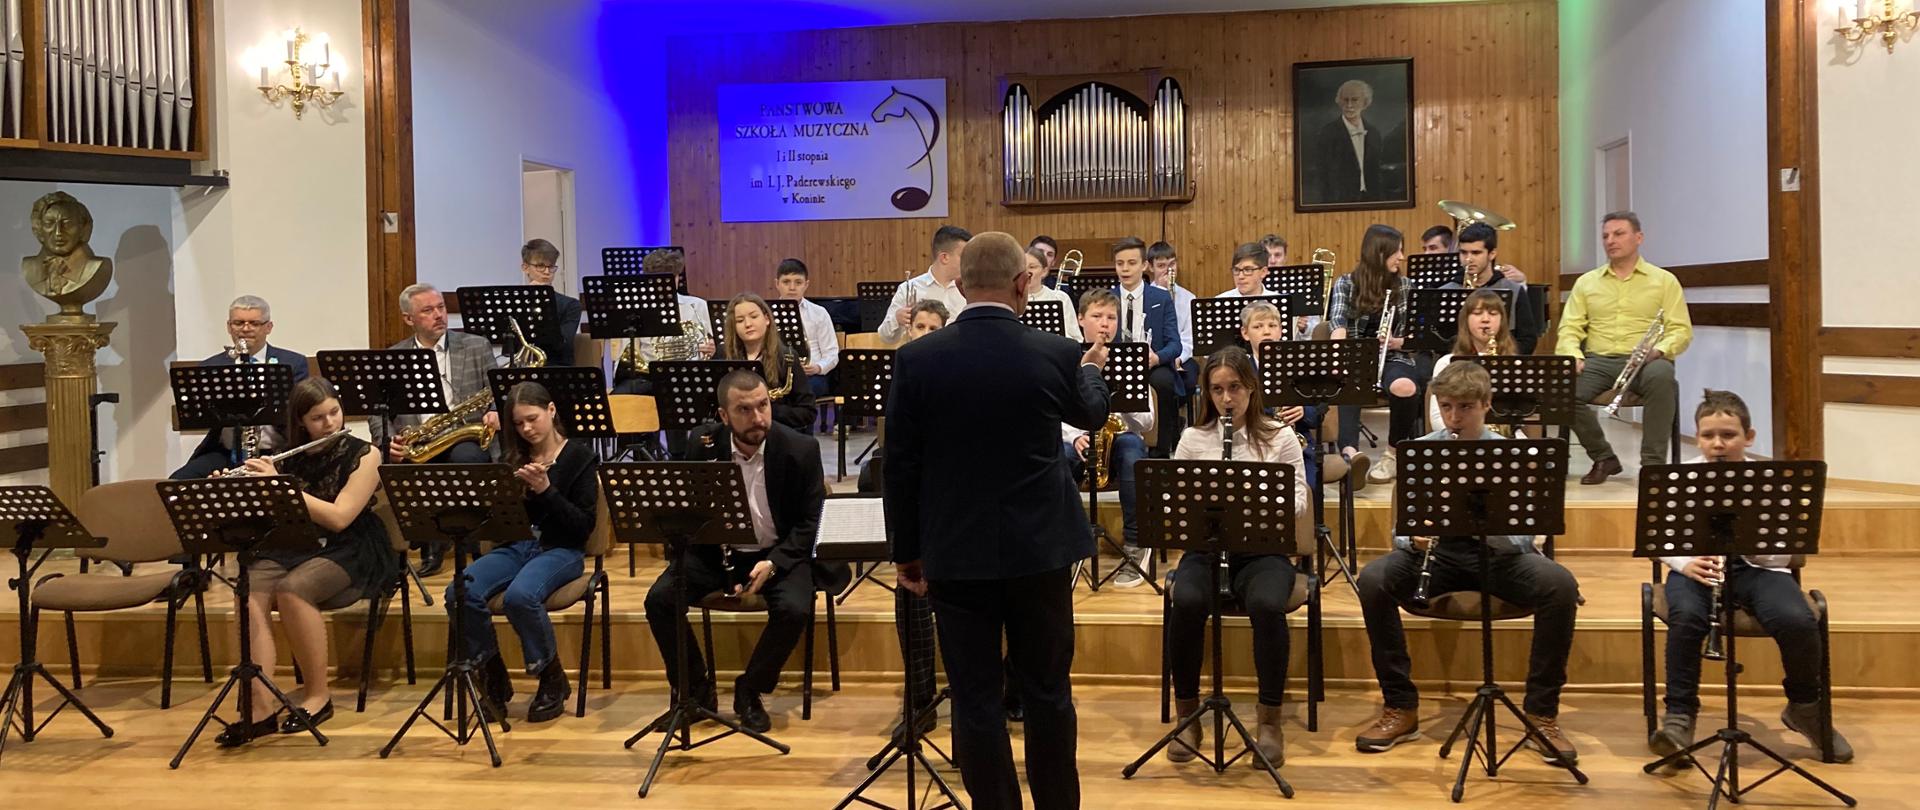 Sala koncertowa PSM w Koninie, na scenie siedzi orkiestra szkolna, dyrygent stoi odwrócony plecami, muzycy trzymają instrumenty, w tle niebieskie światło